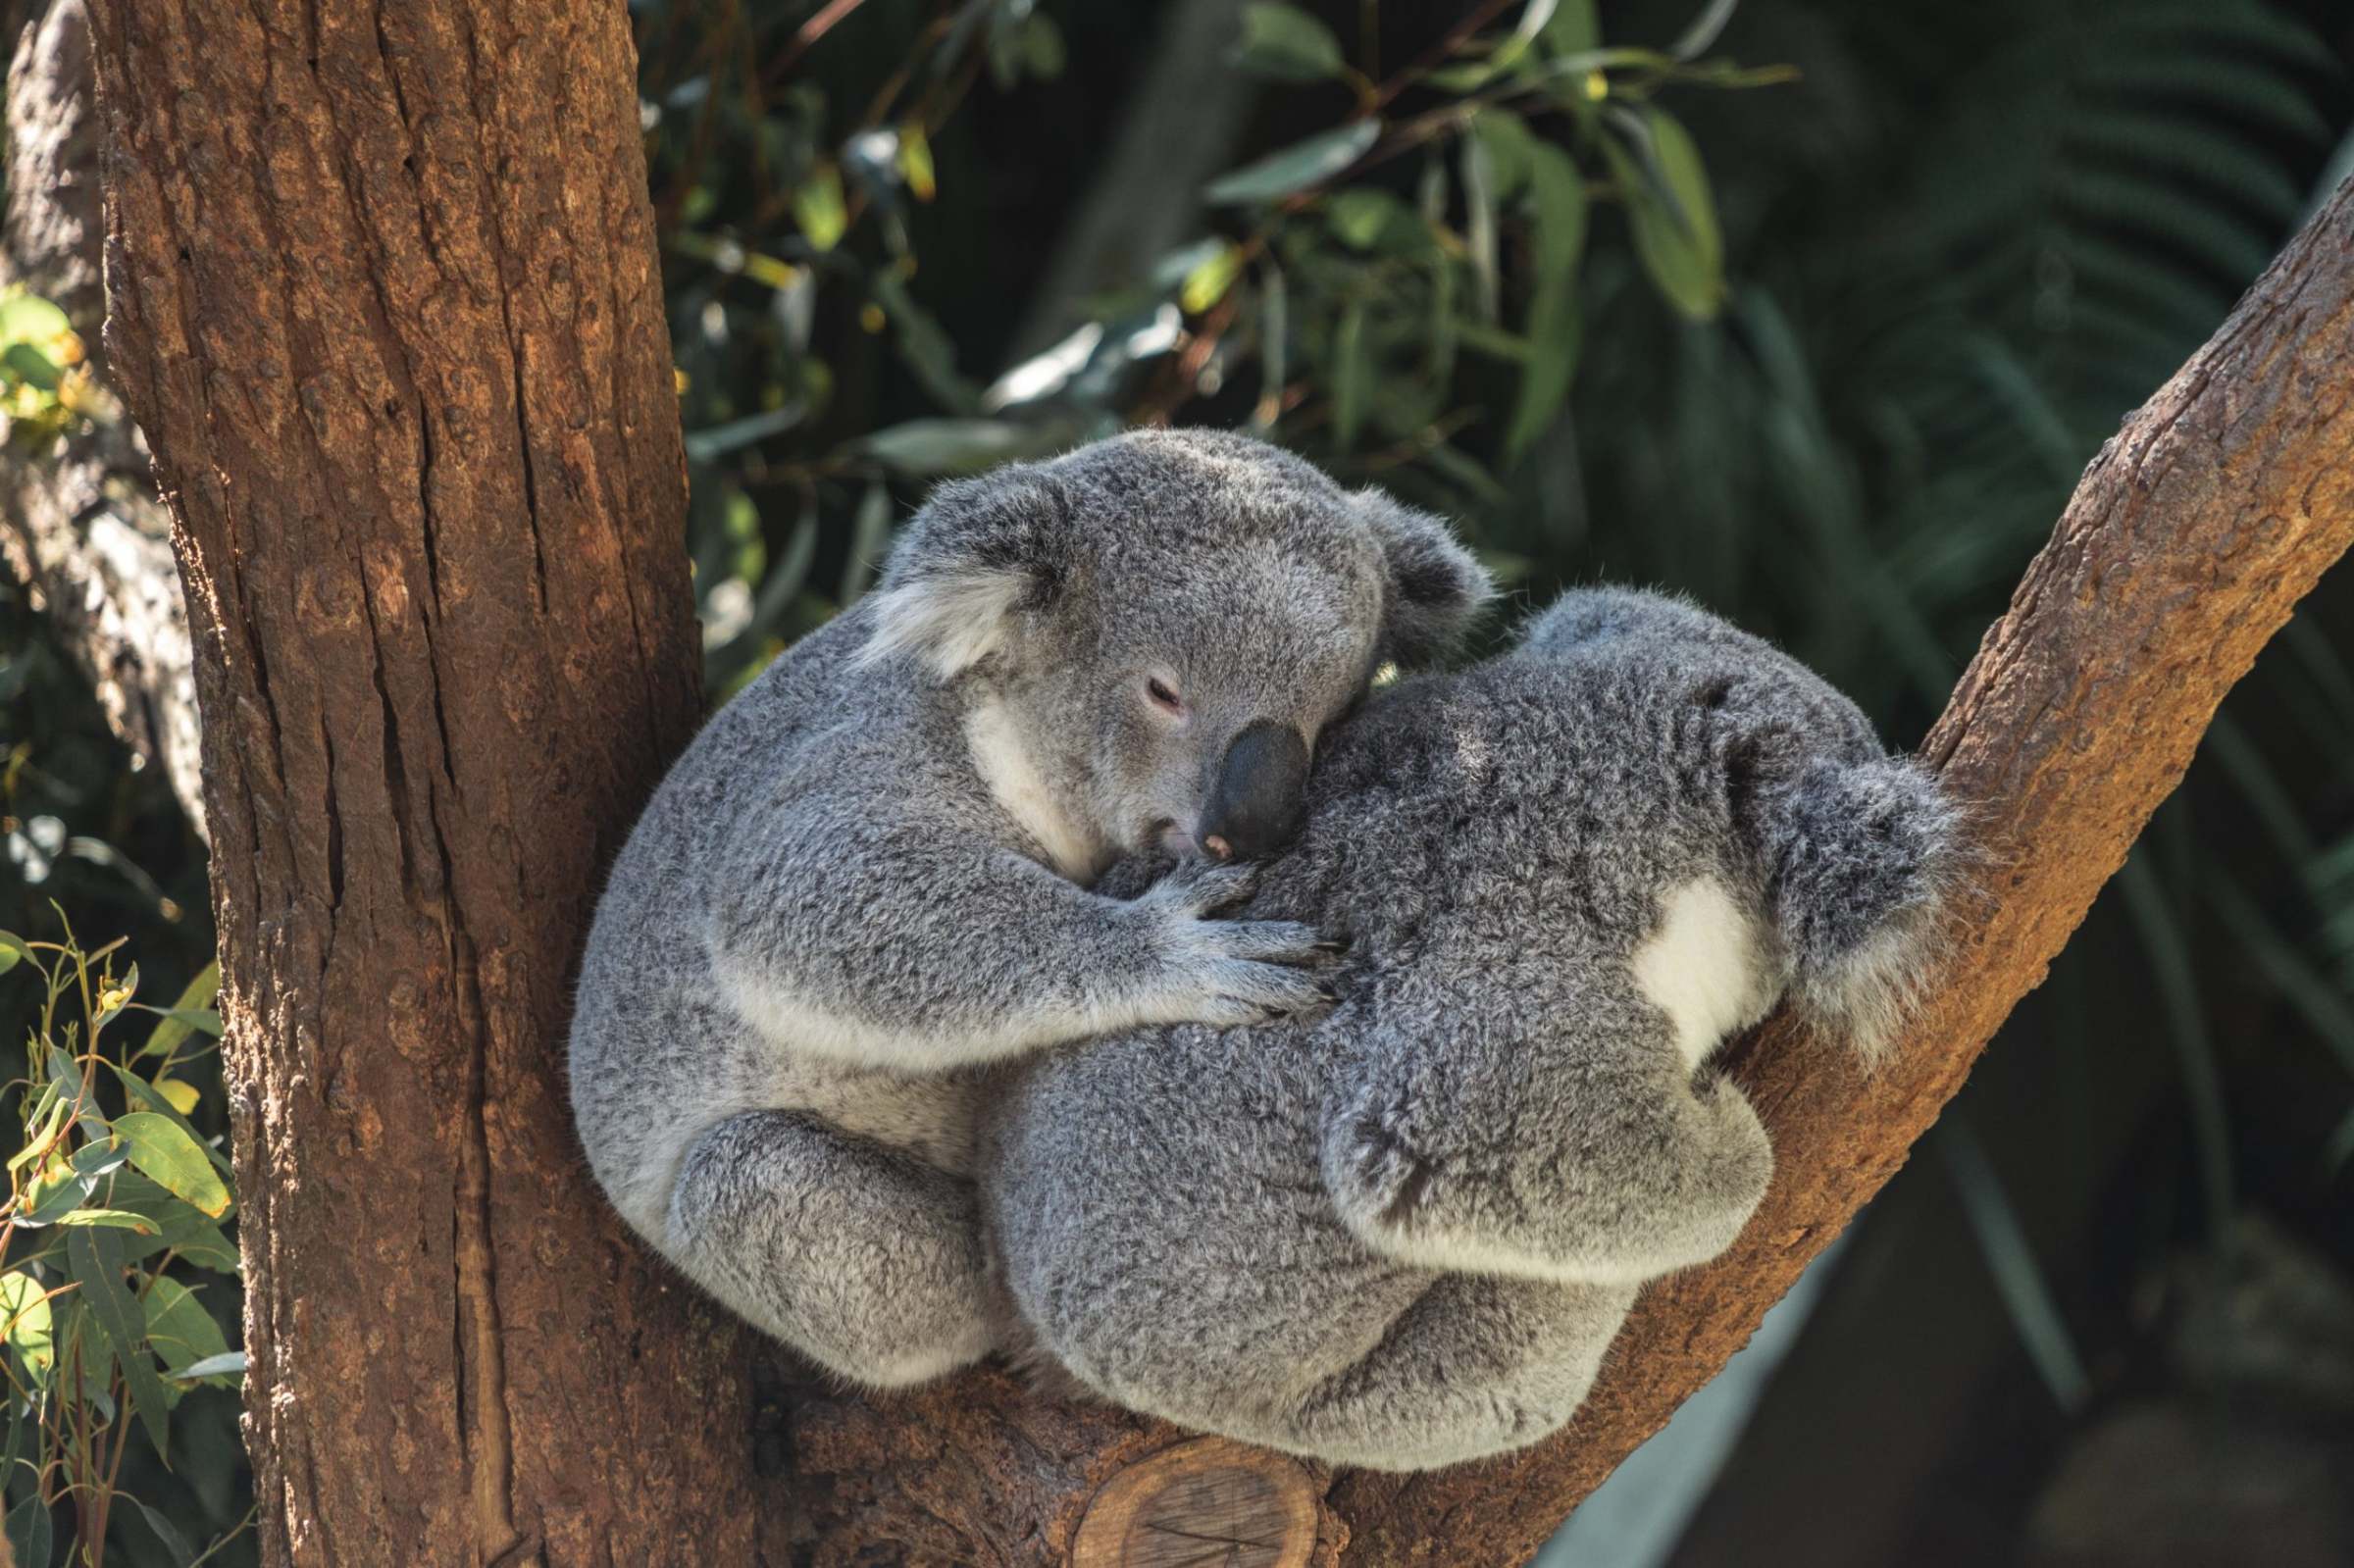 koalas koala extinct australia going unsplash adrian pereira east